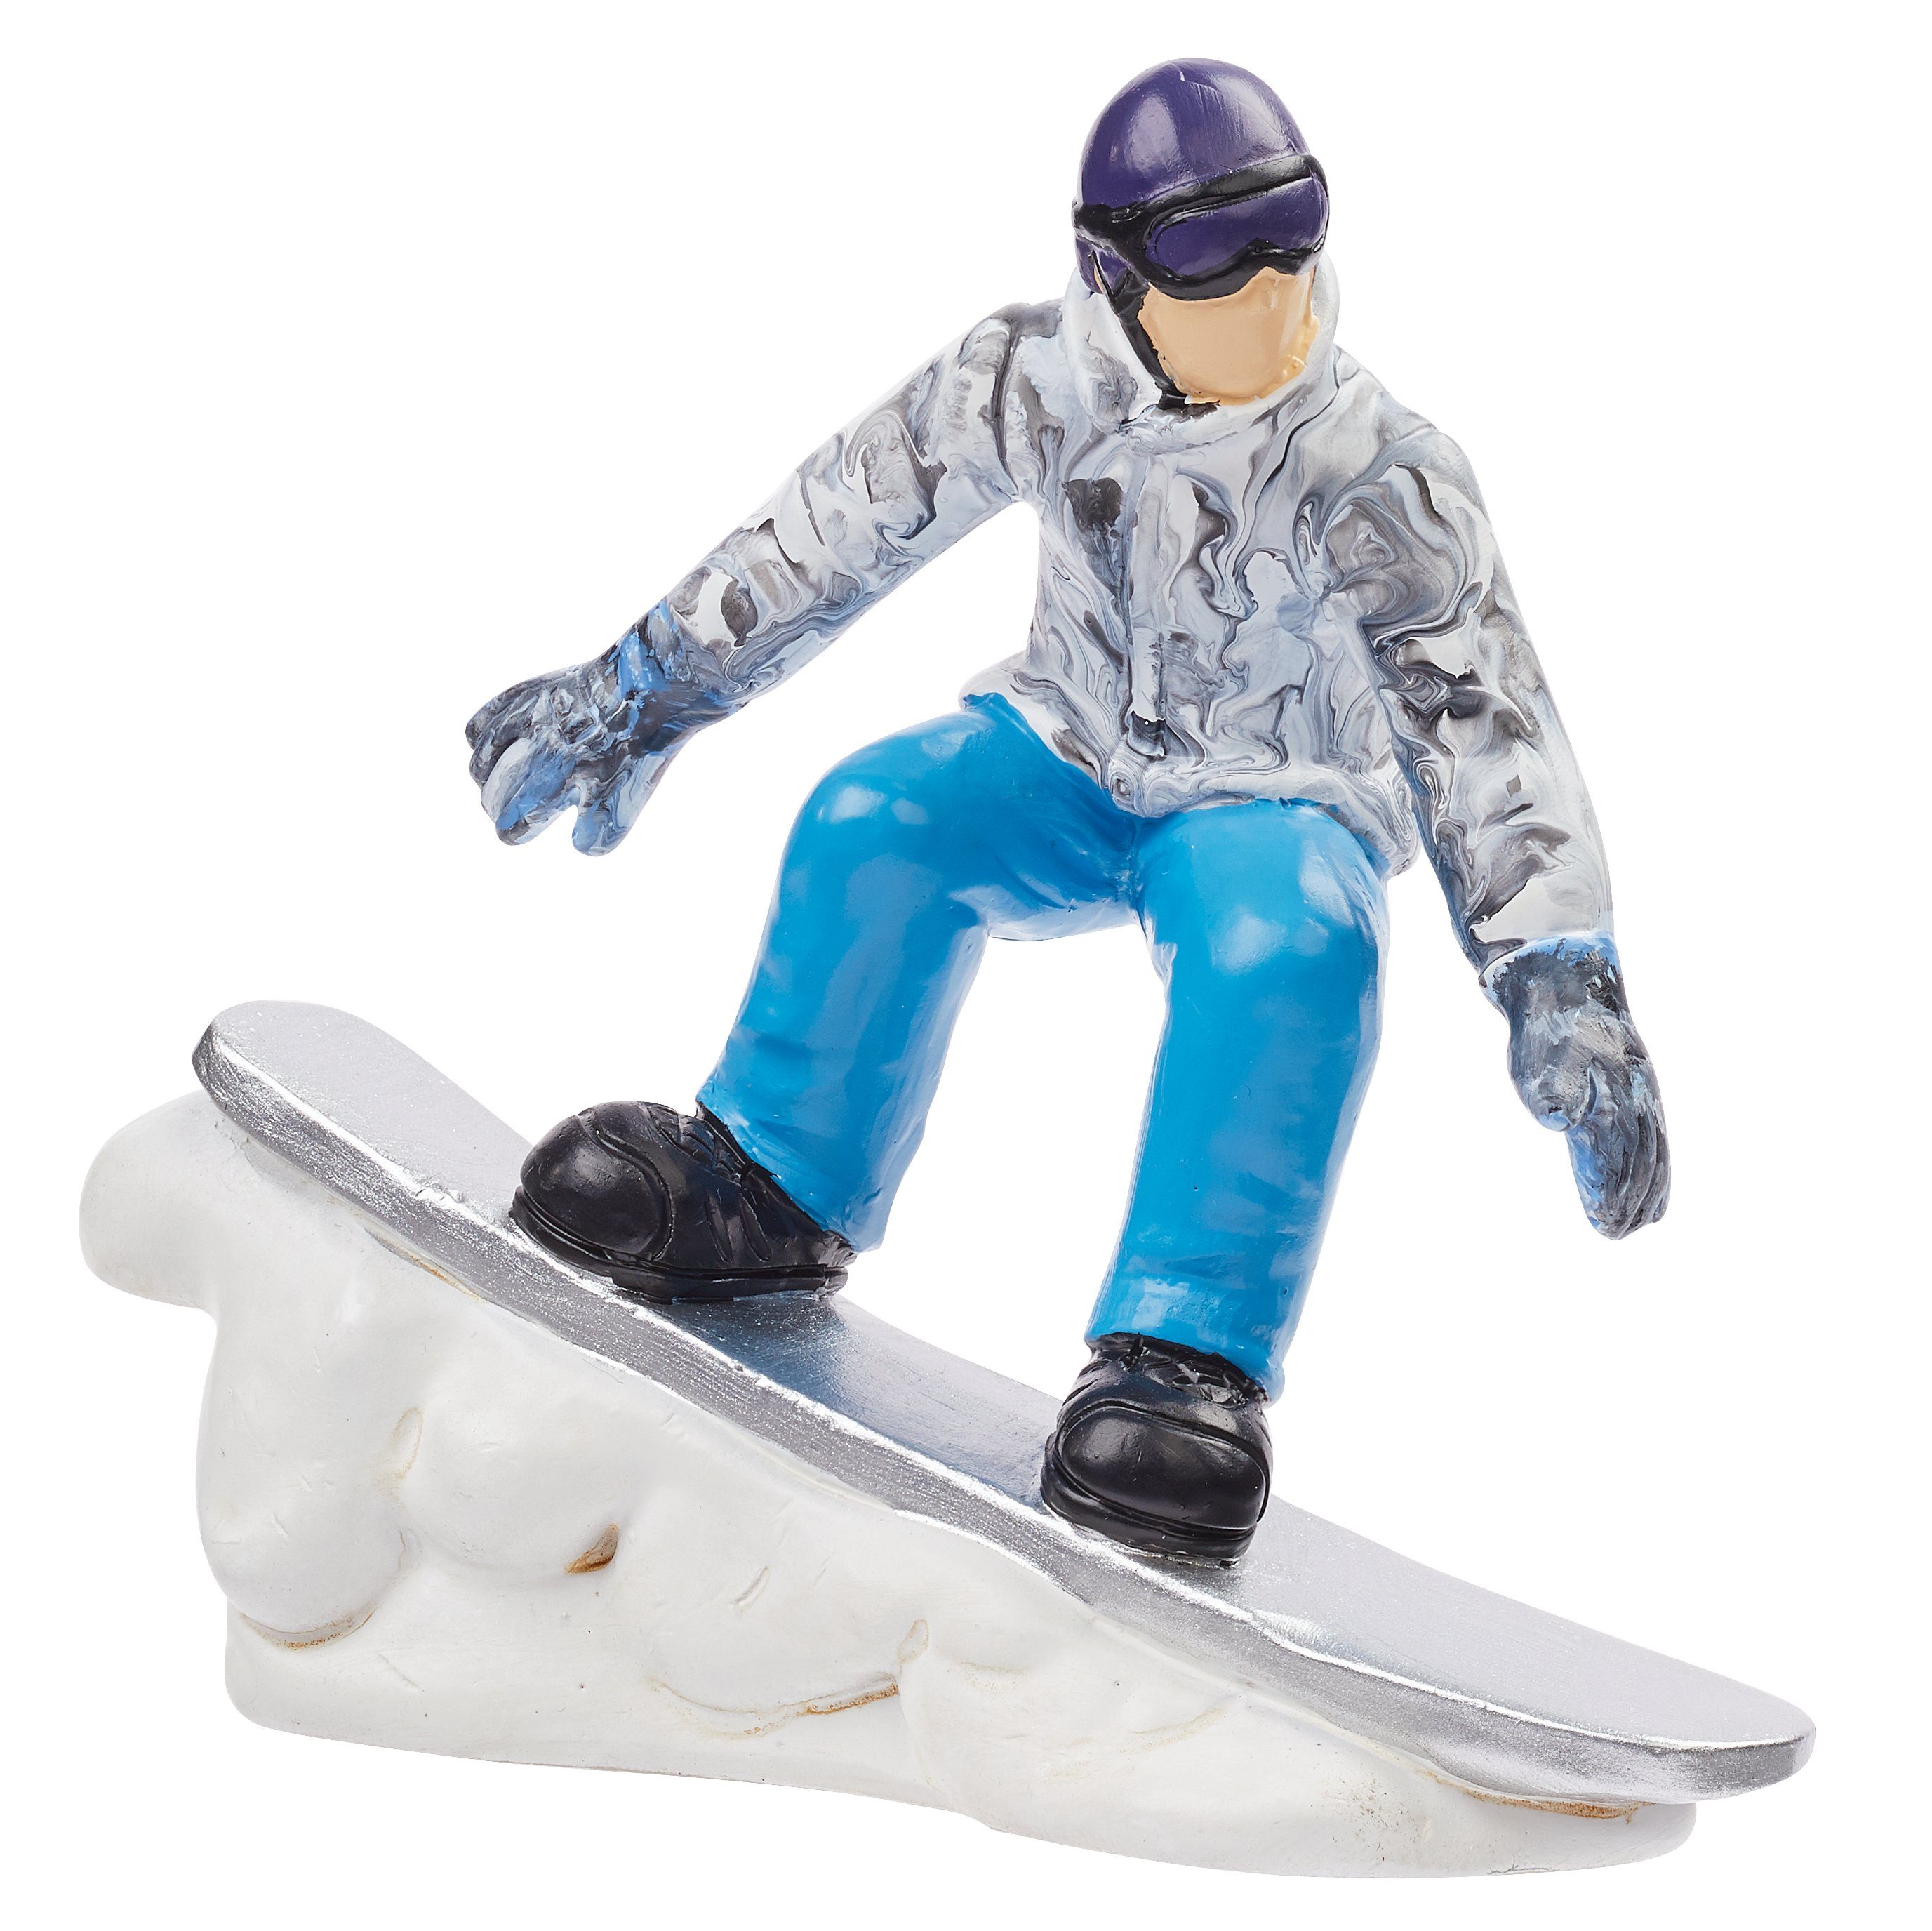 HobbyFun Dekofigur Snowboarder, 9,5 cm